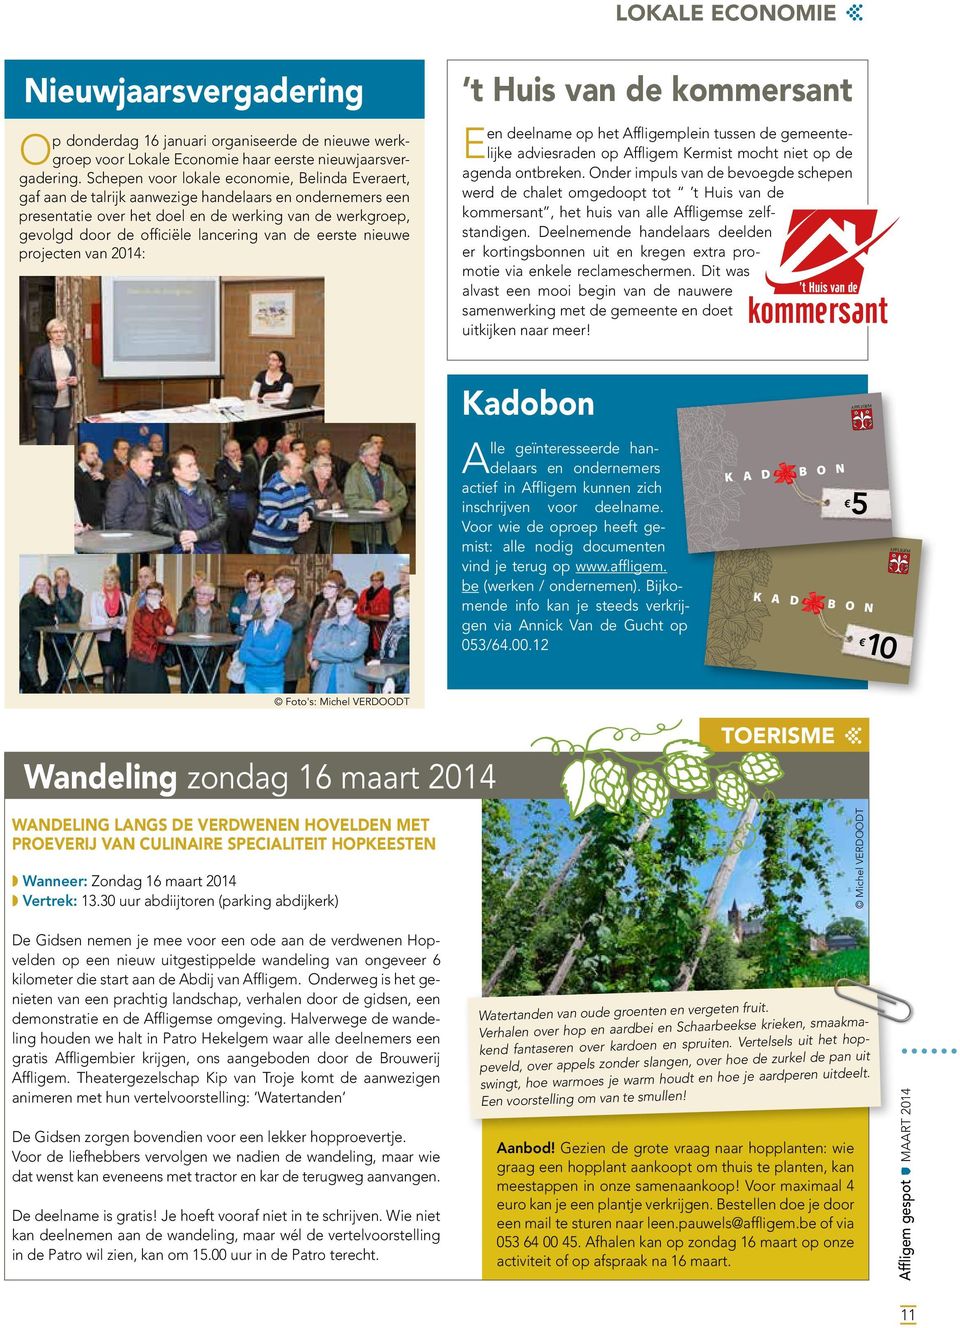 lancering van de eerste nieuwe projecten van 2014: en deelname op het Affligemplein tussen de gemeentelijke adviesraden op Affligem Kermist mocht niet op de agenda ontbreken.